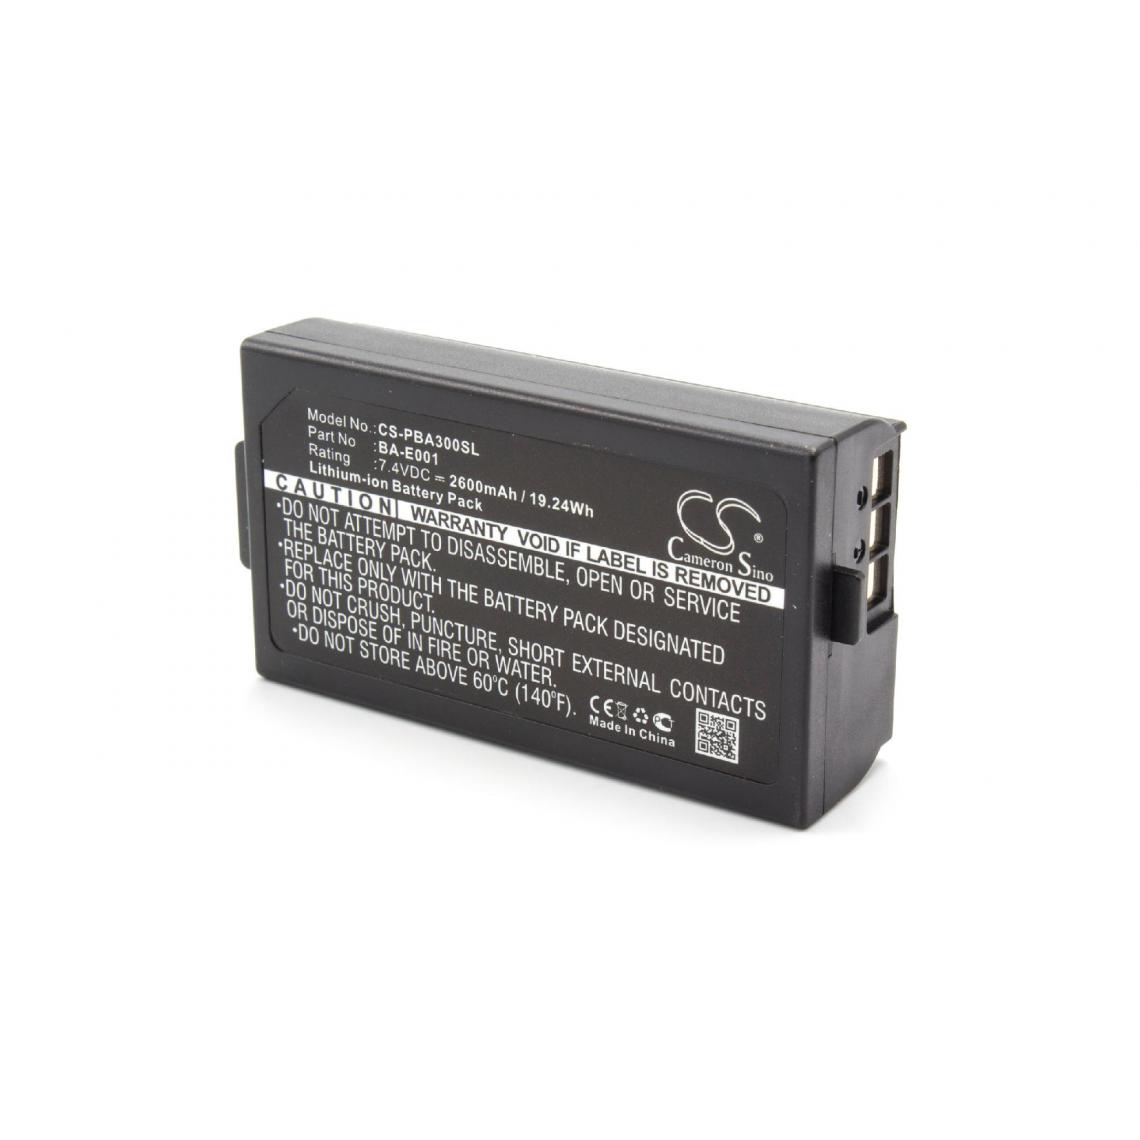 Vhbw - vhbw Batterie compatible avec Brother P-Touch PT-P750WVP EDGE imprimante, scanner, imprimante d'étiquettes (2600mAh, 7,4V, Li-ion) - Imprimante Jet d'encre